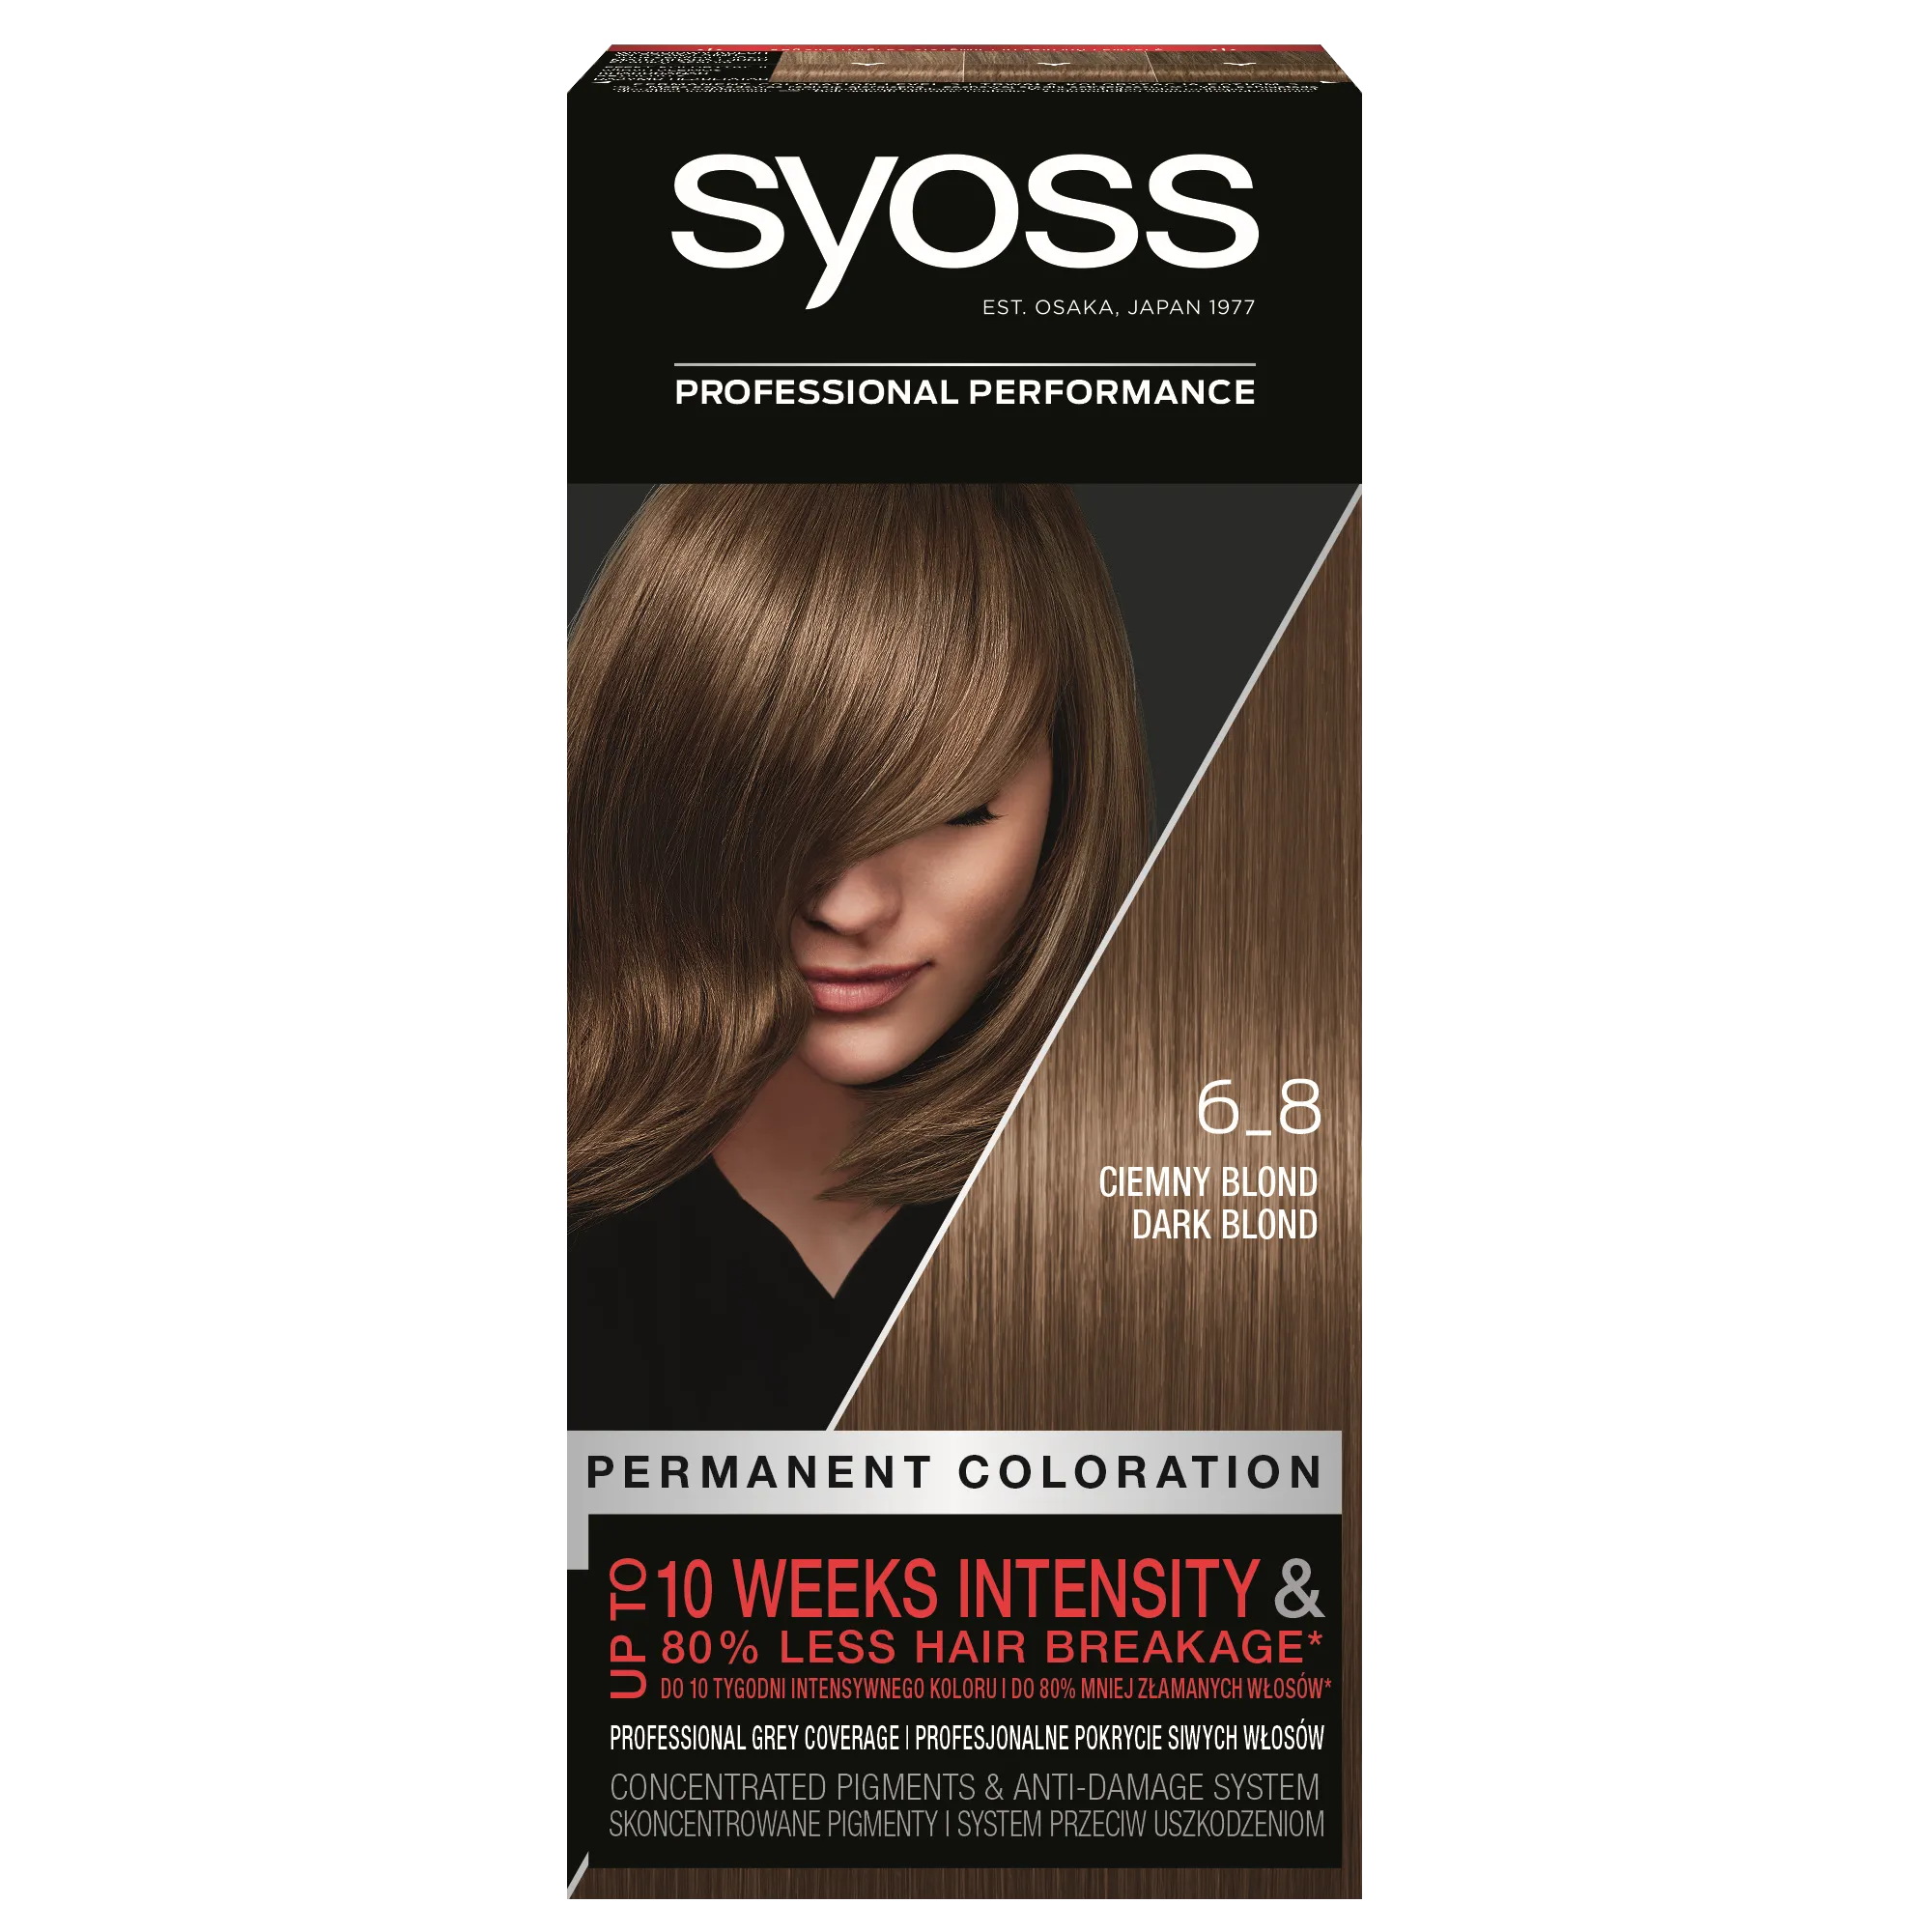 Syoss Permanent Coloration farba do włosów trwale koloryzująca 6-8 Ciemny Blond, 1 szt.